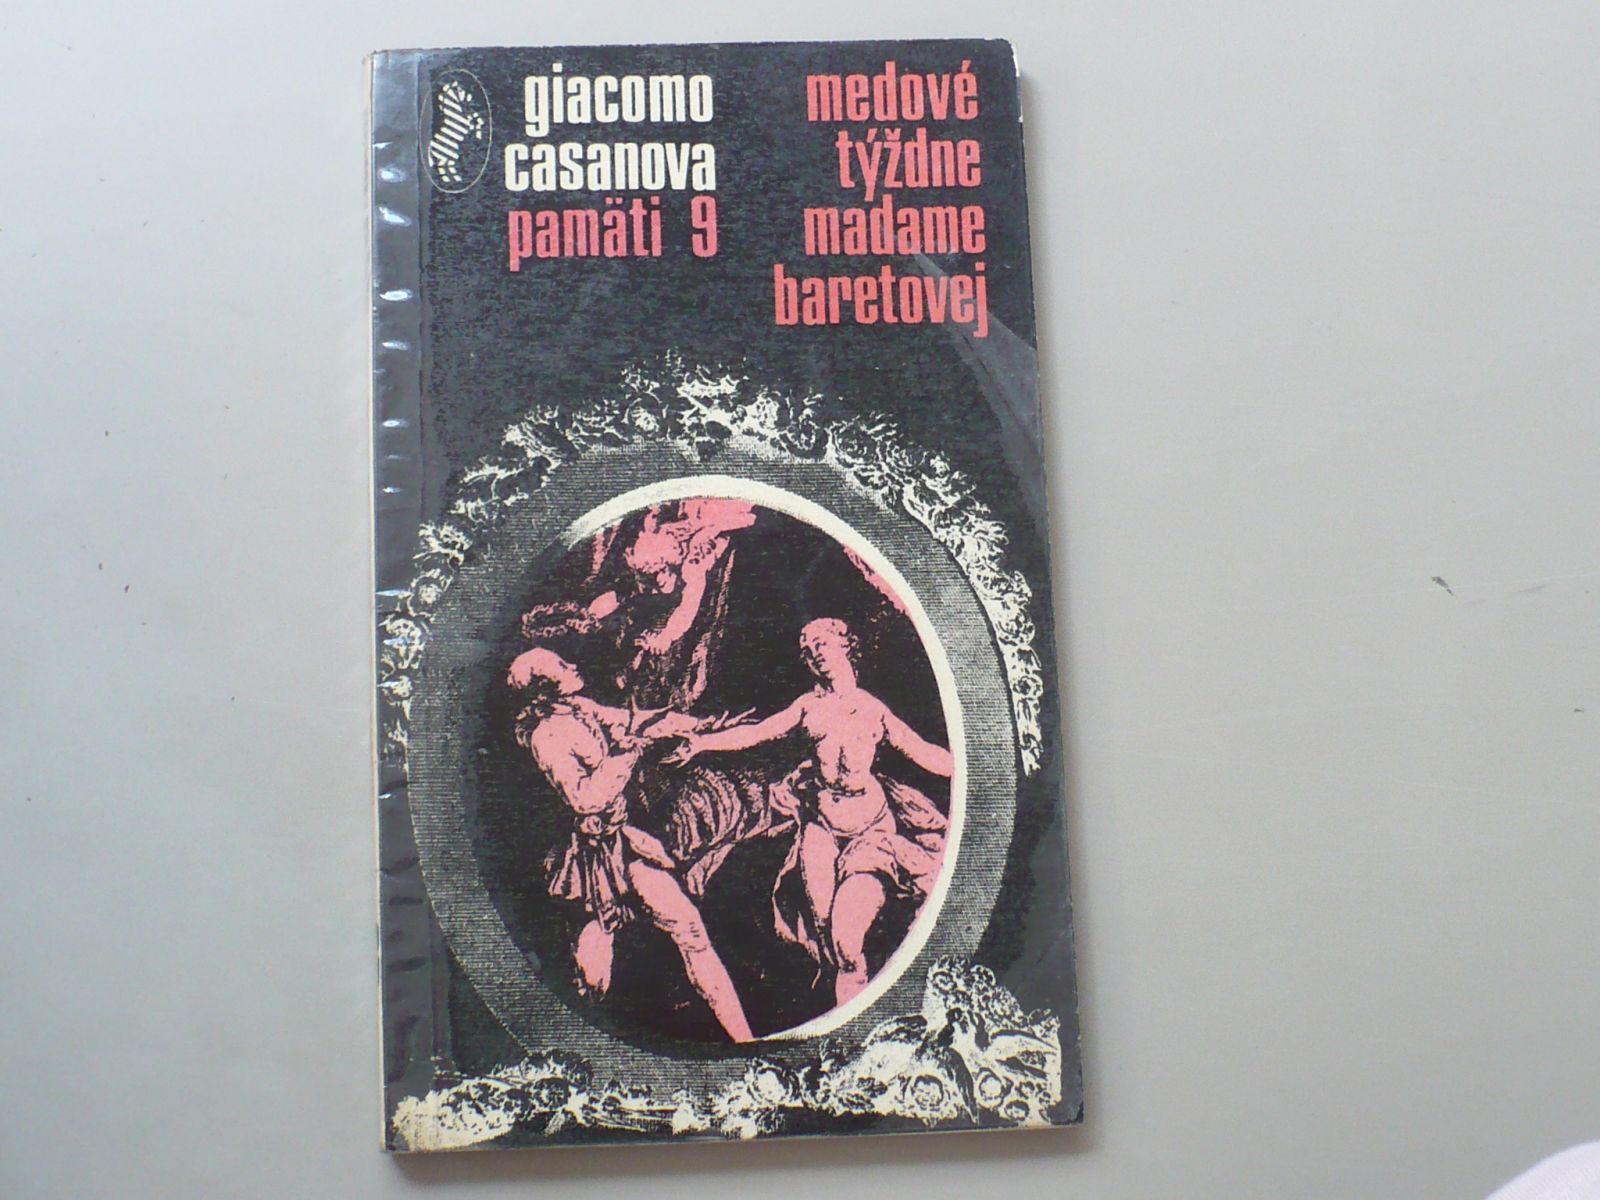 Giacomo Casanova - Medové týždne madame Baretovej (1970) Pamäti 9, slovensky